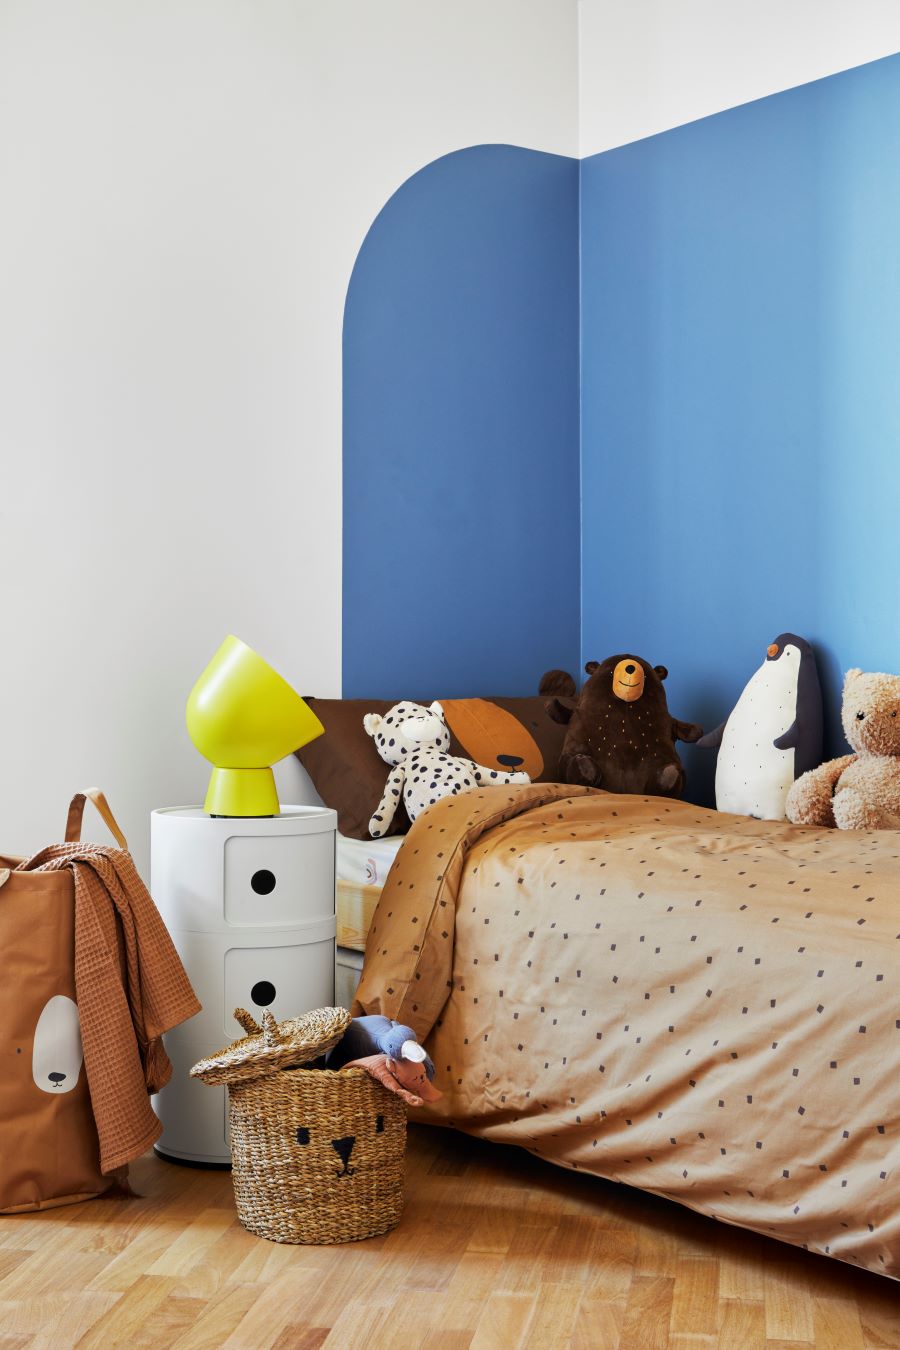 Časť detskej izby s posteľou s hračkami.